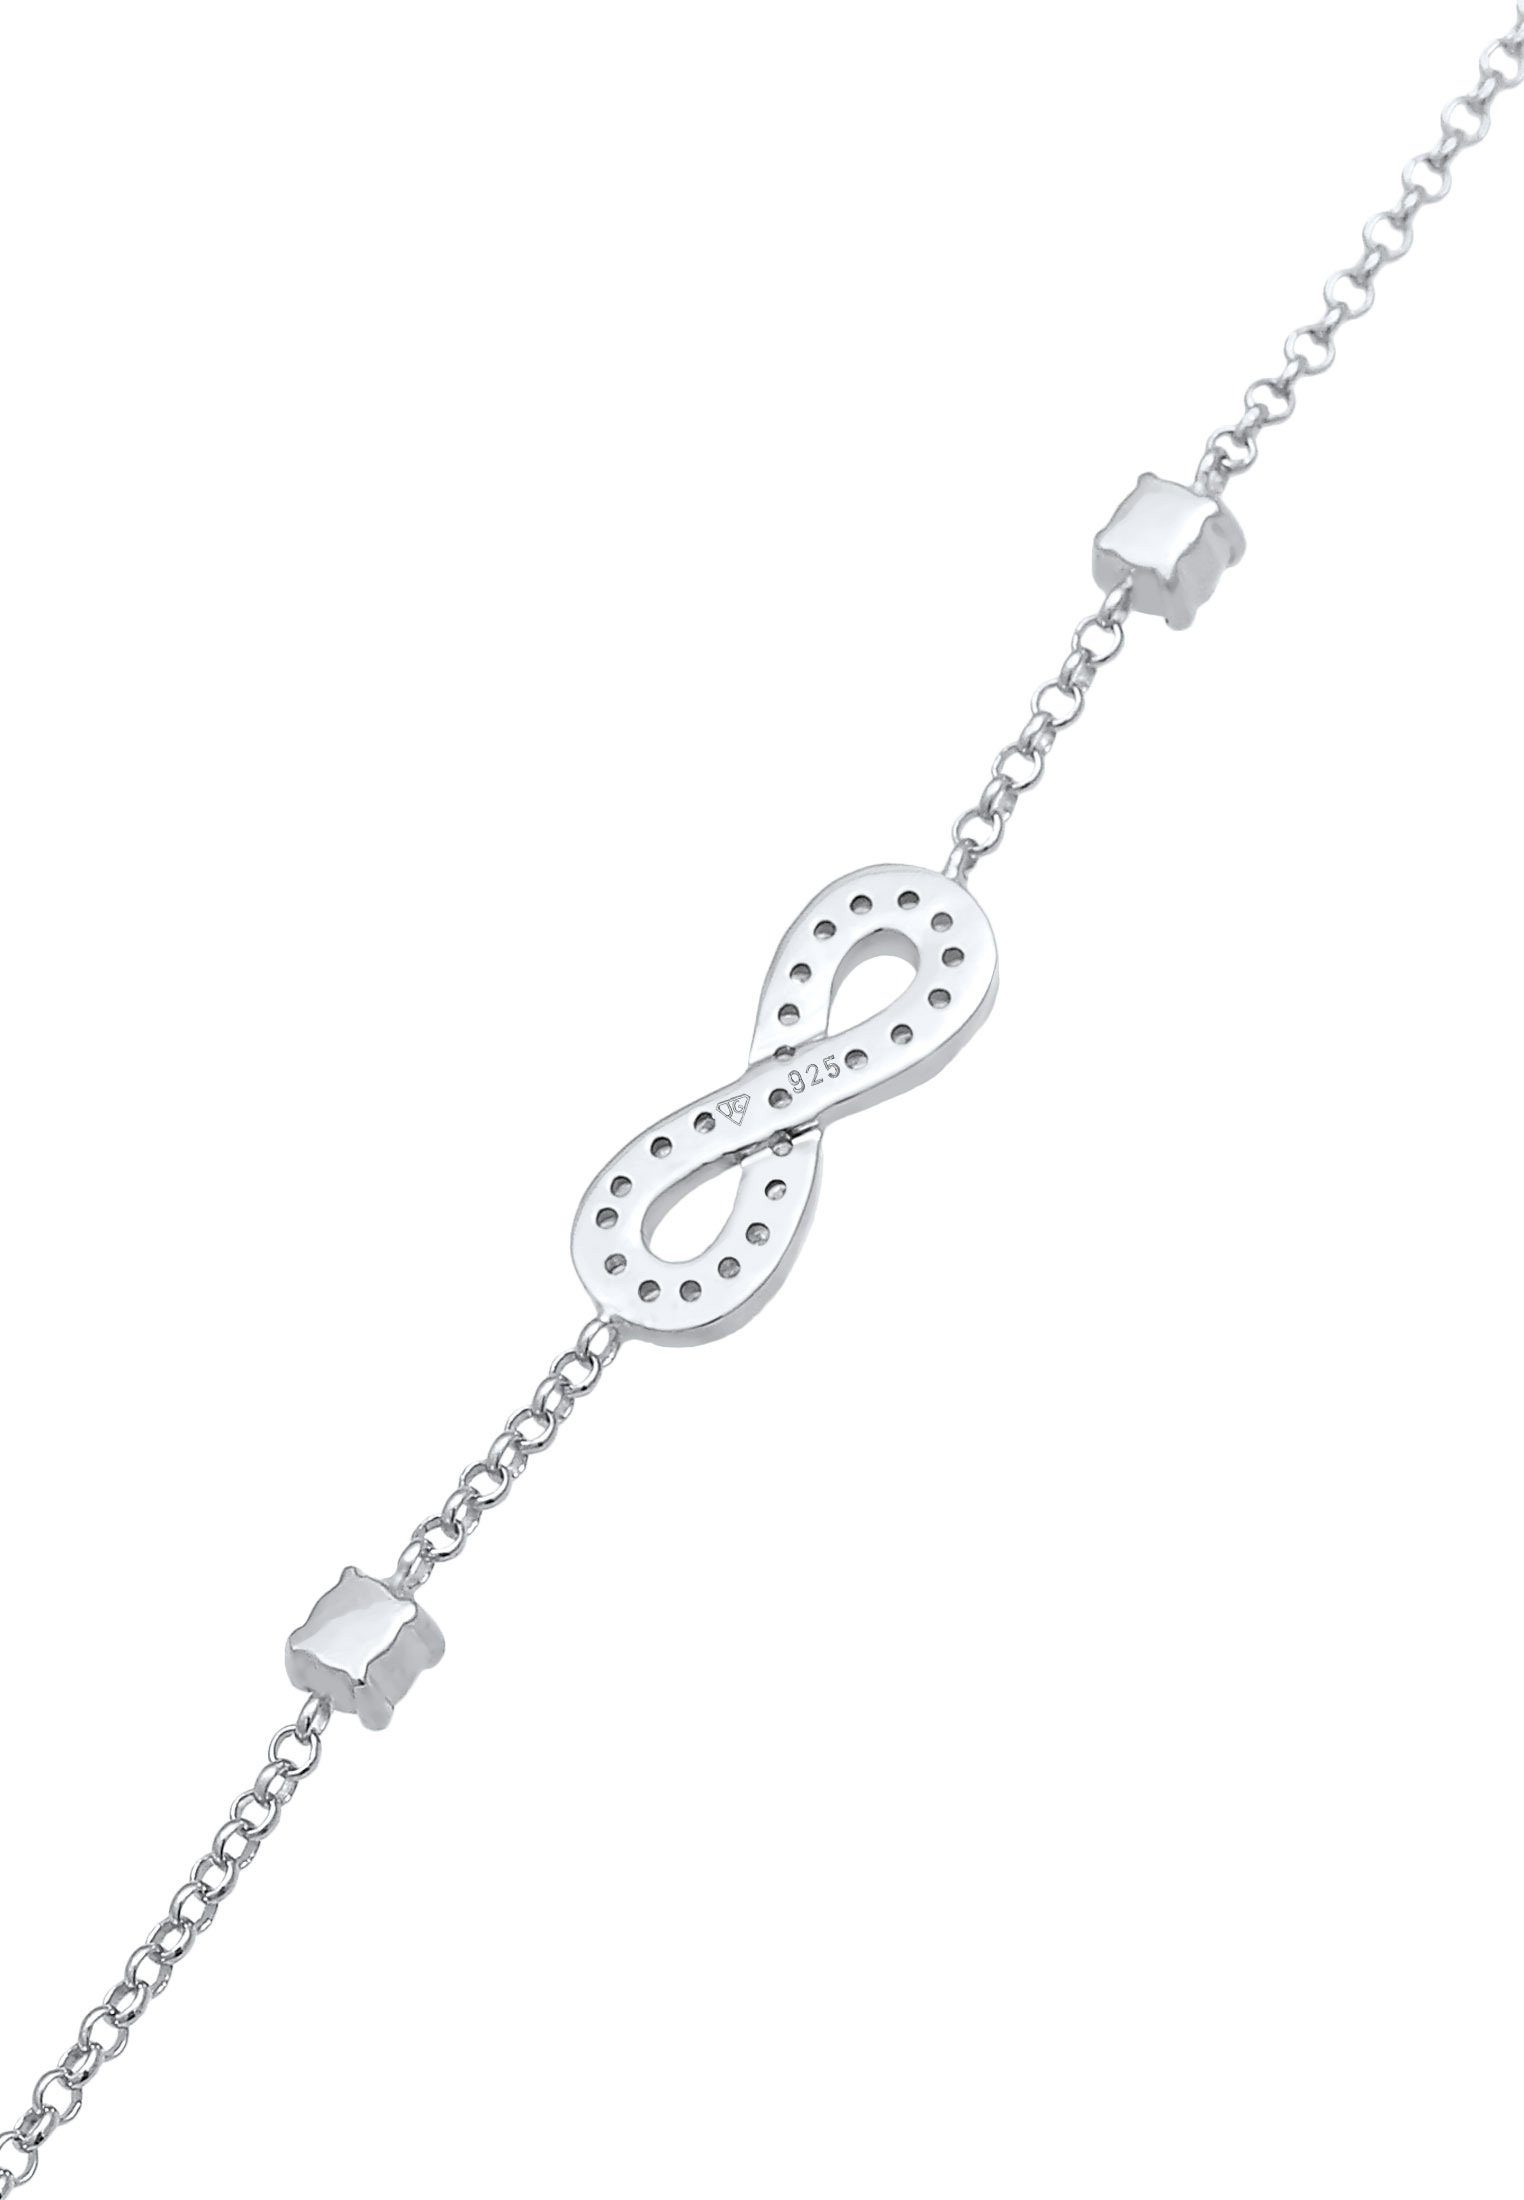 Nenalina Armband Infinity Zirkonia Silber 925 Unendlichkeit